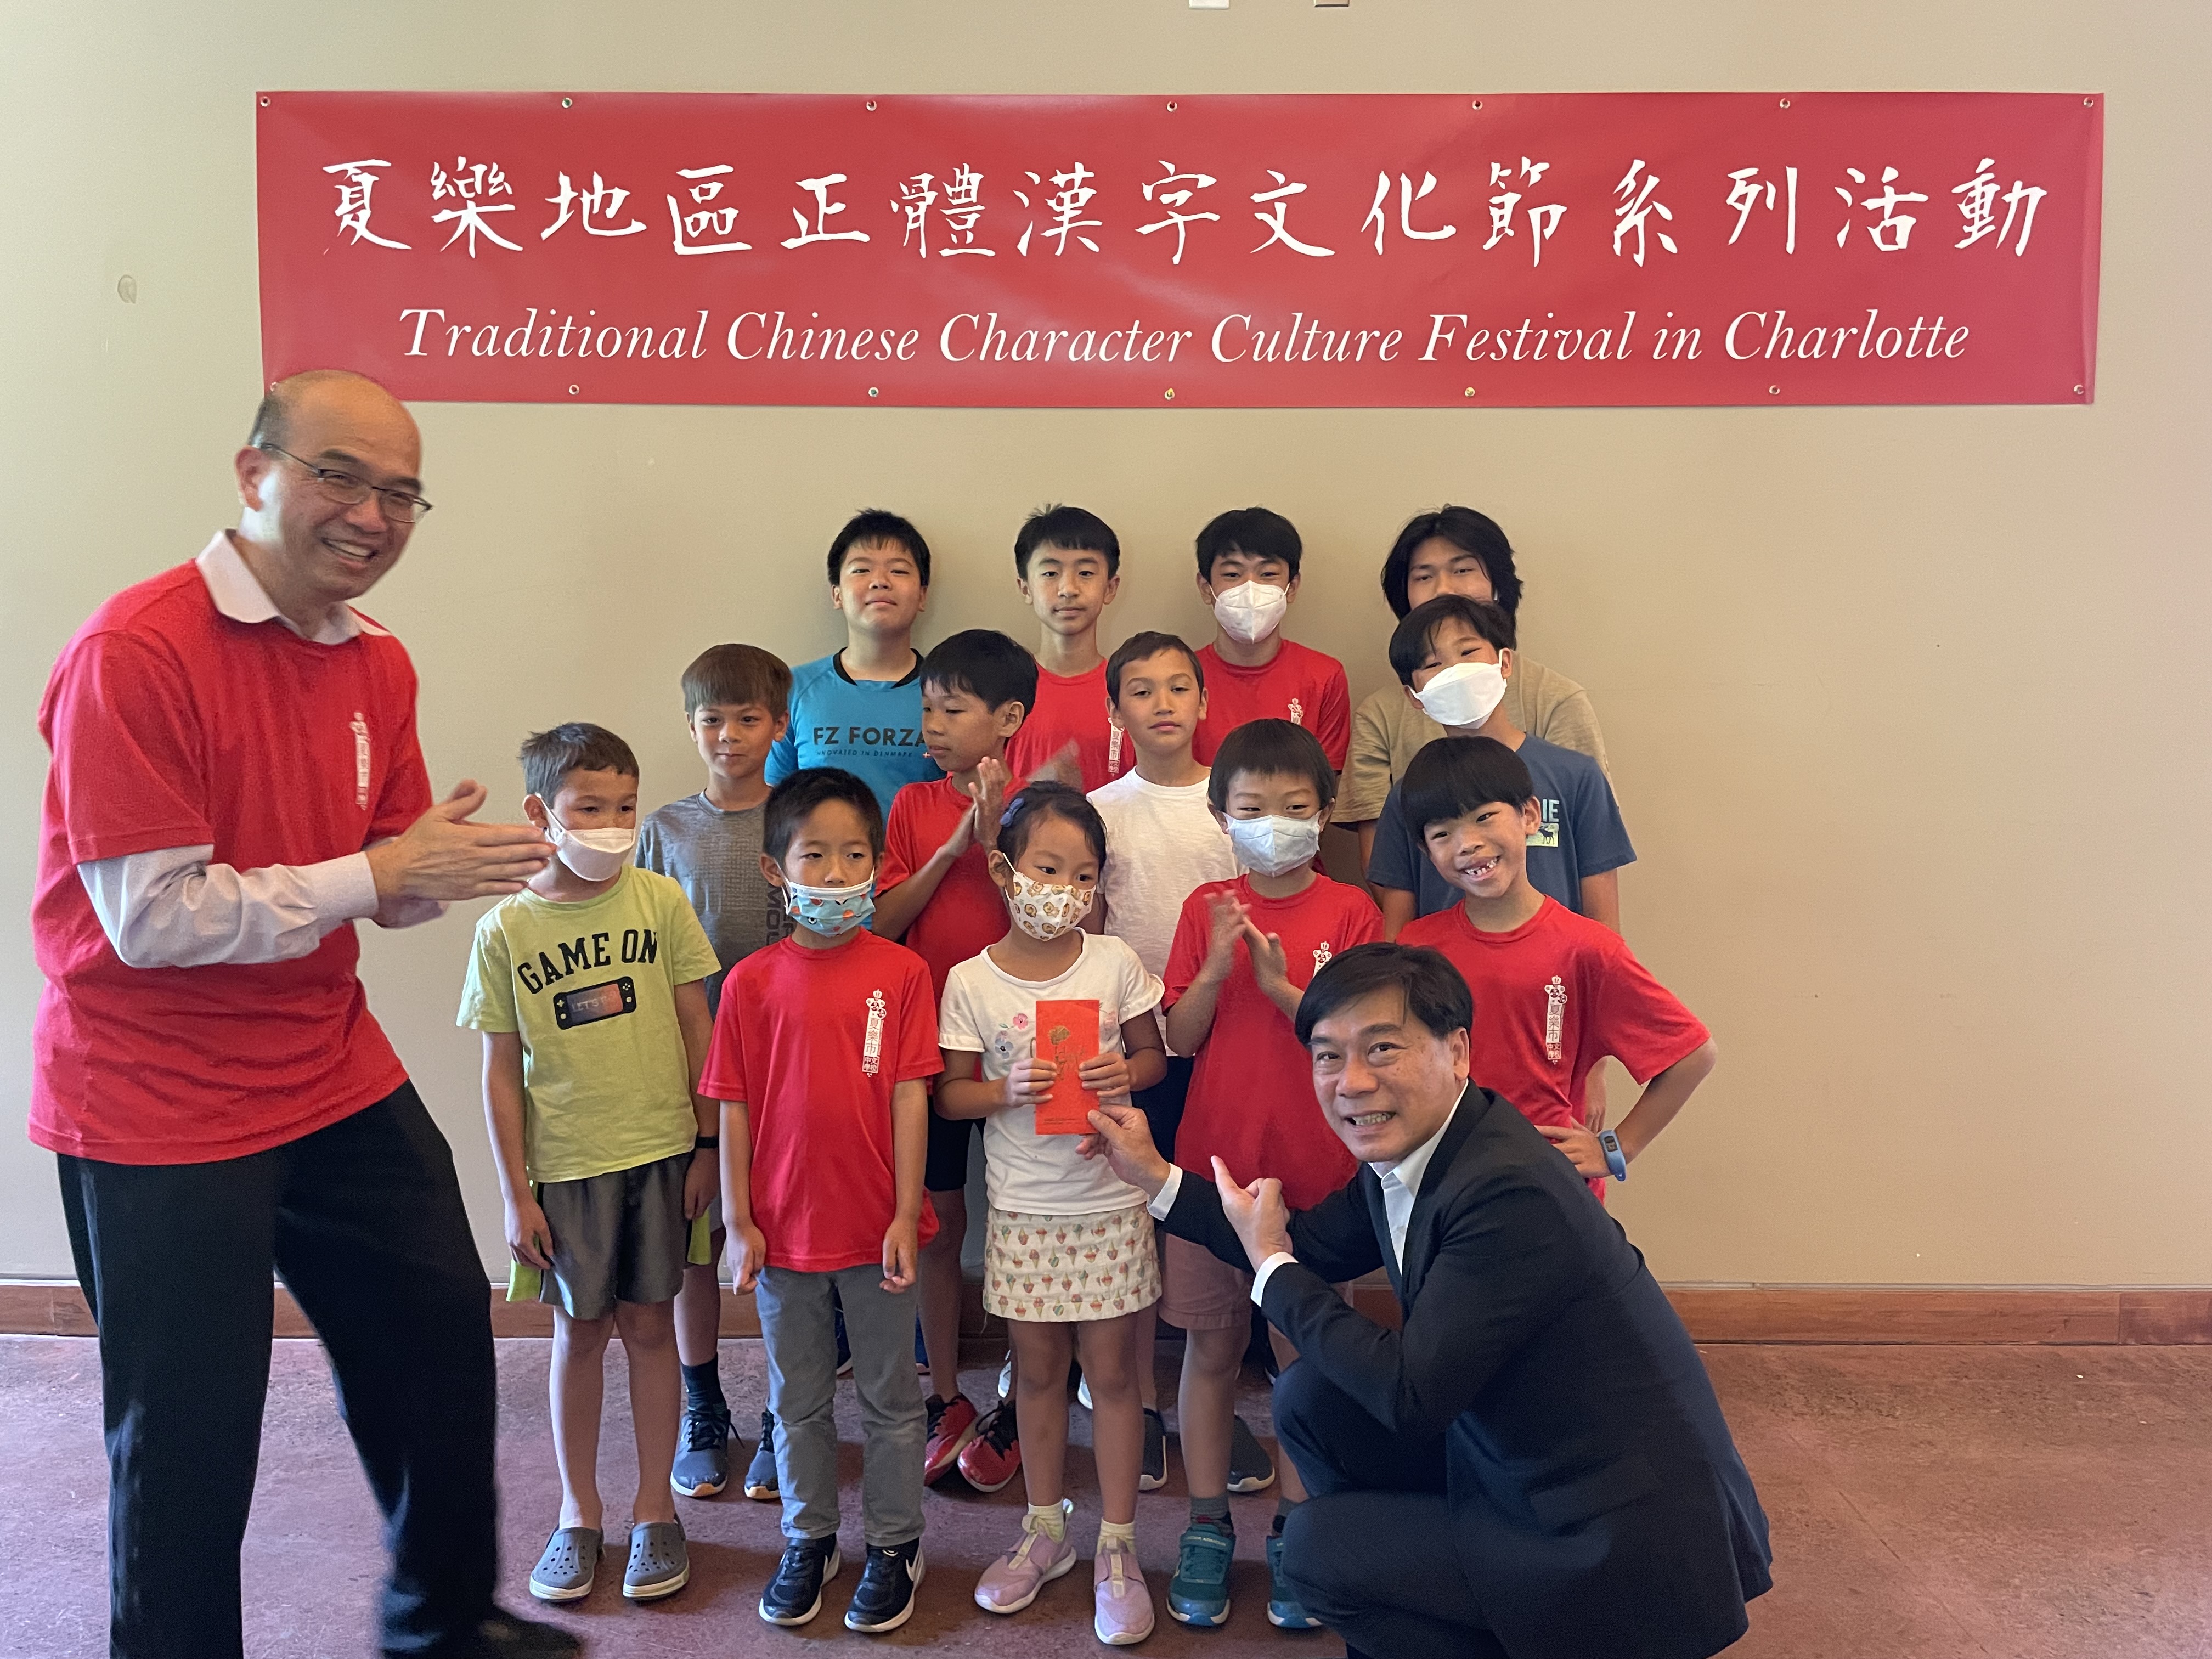 亞特蘭大僑教中心歐主任宏偉頒獎給漢字文化節比賽獲勝團隊。